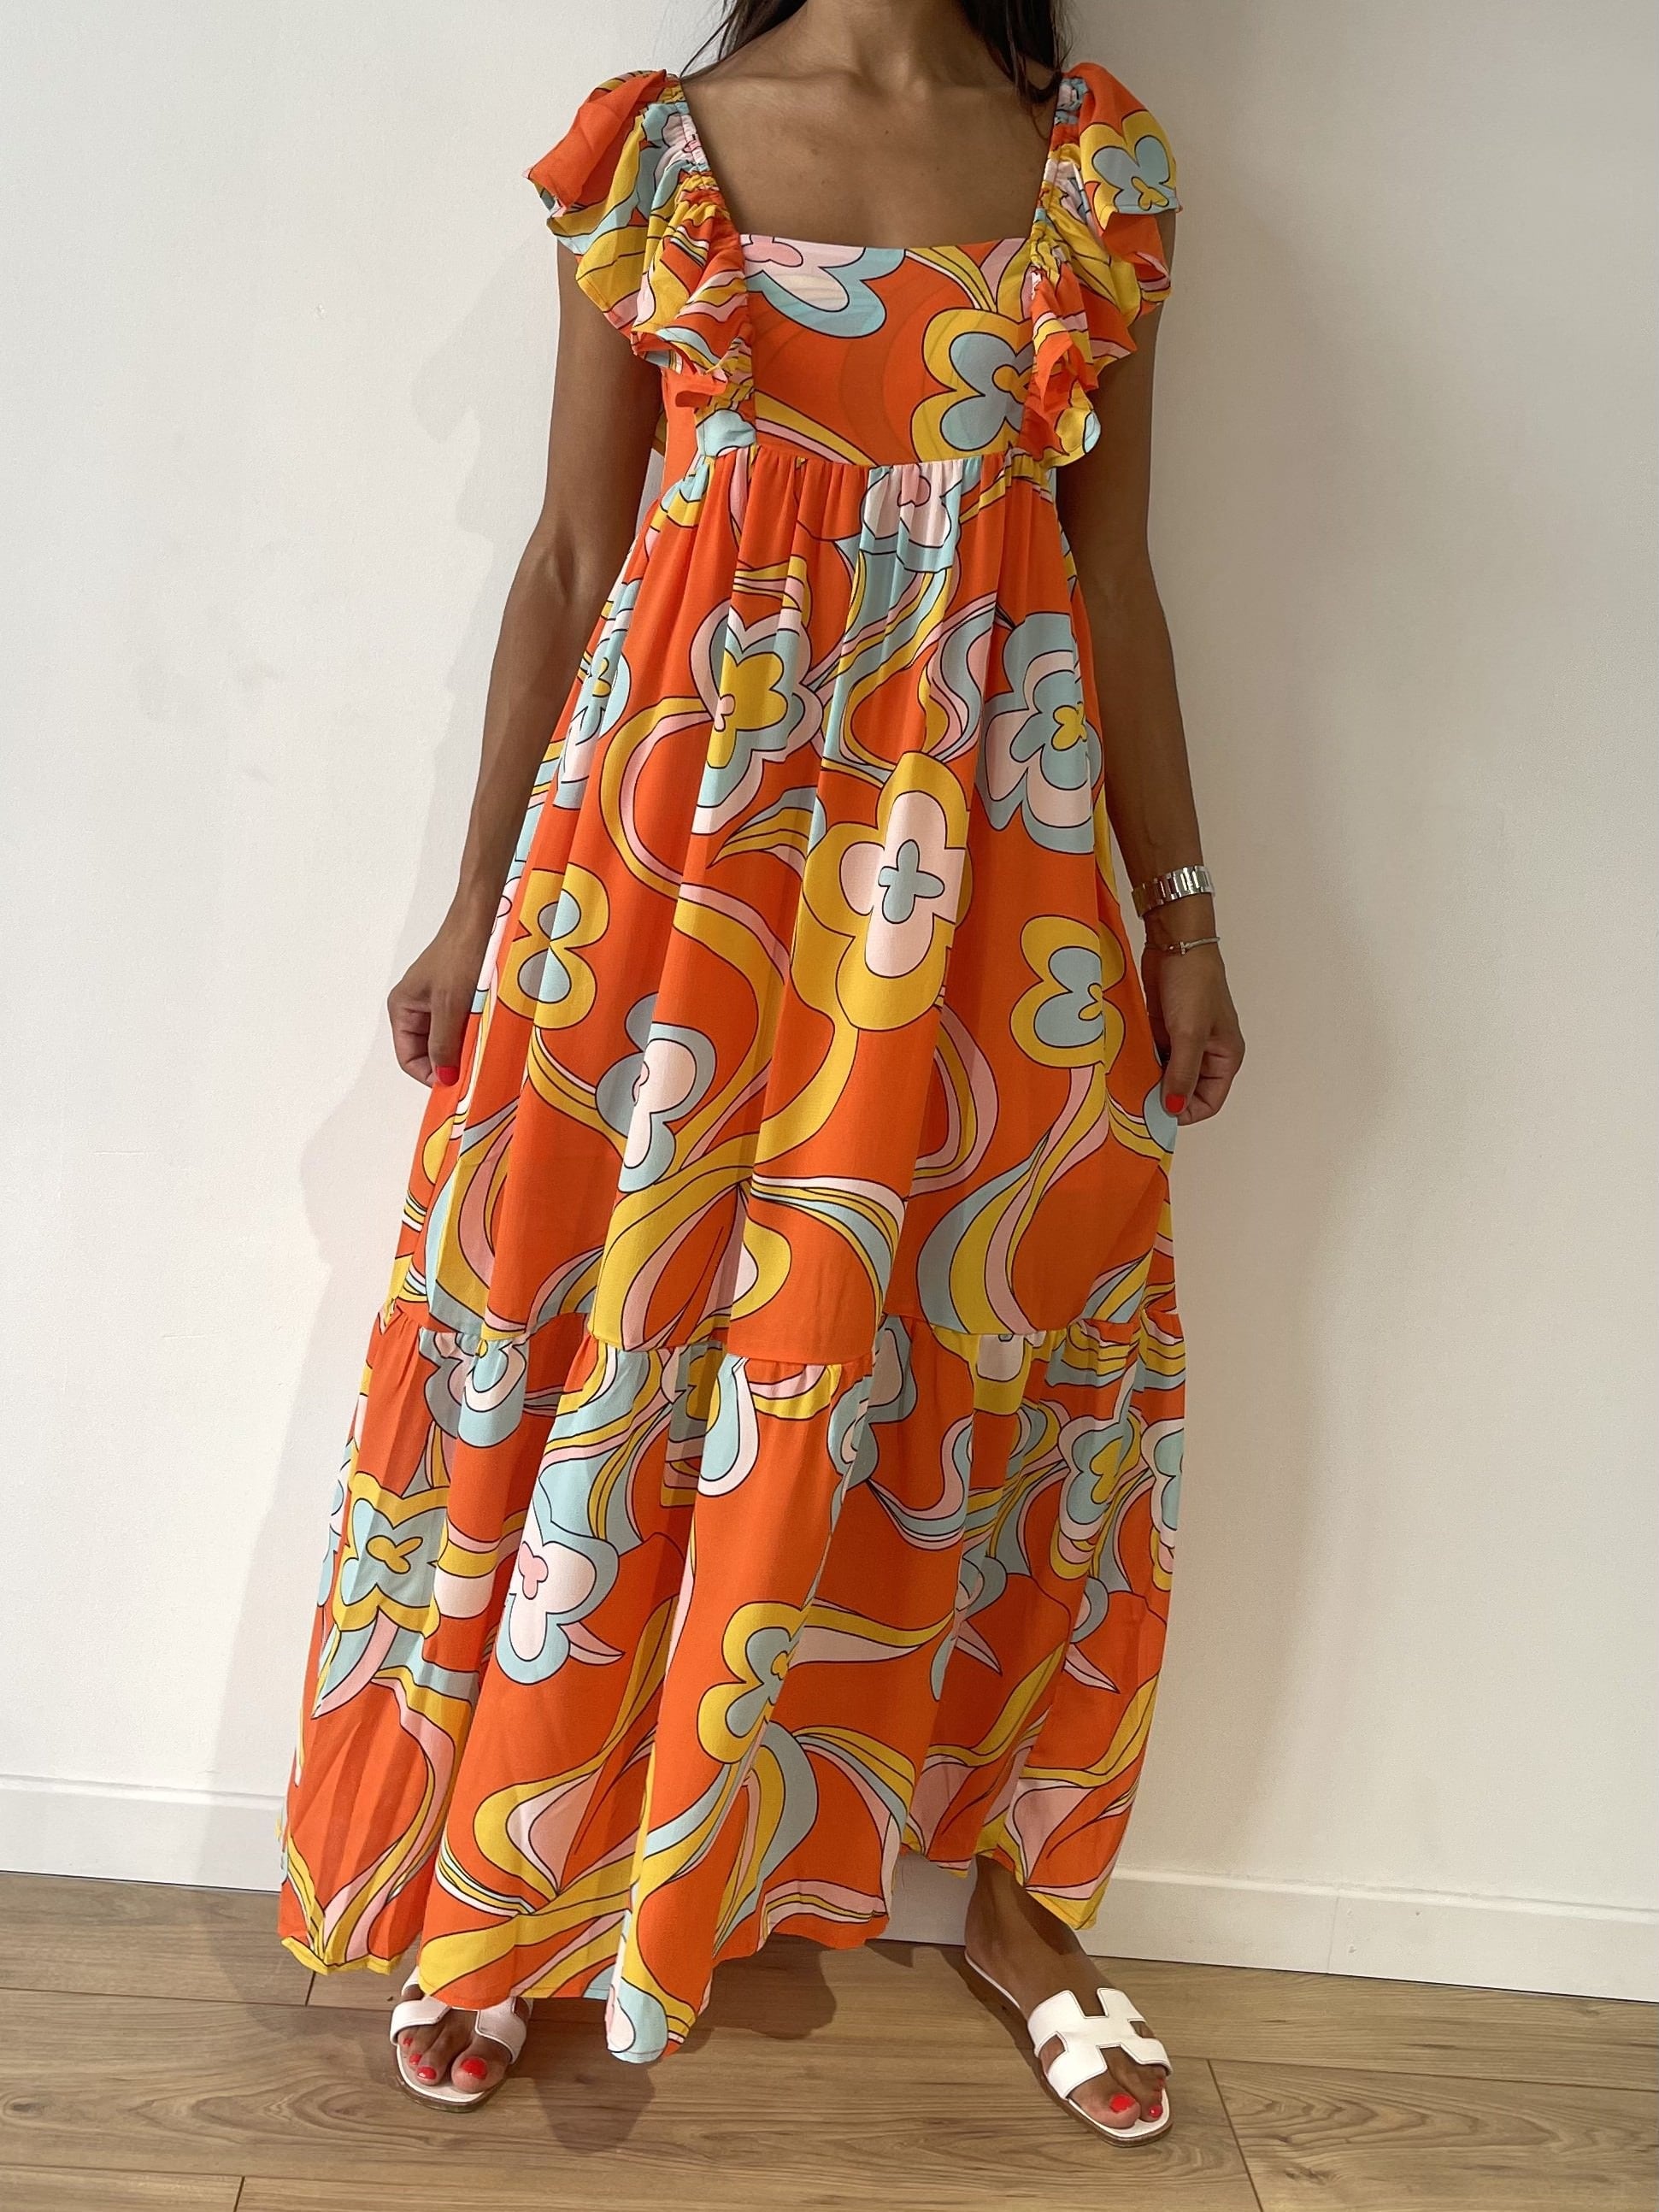 Robe maxi à fleurs orange vif, idéale pour les sorties printanières